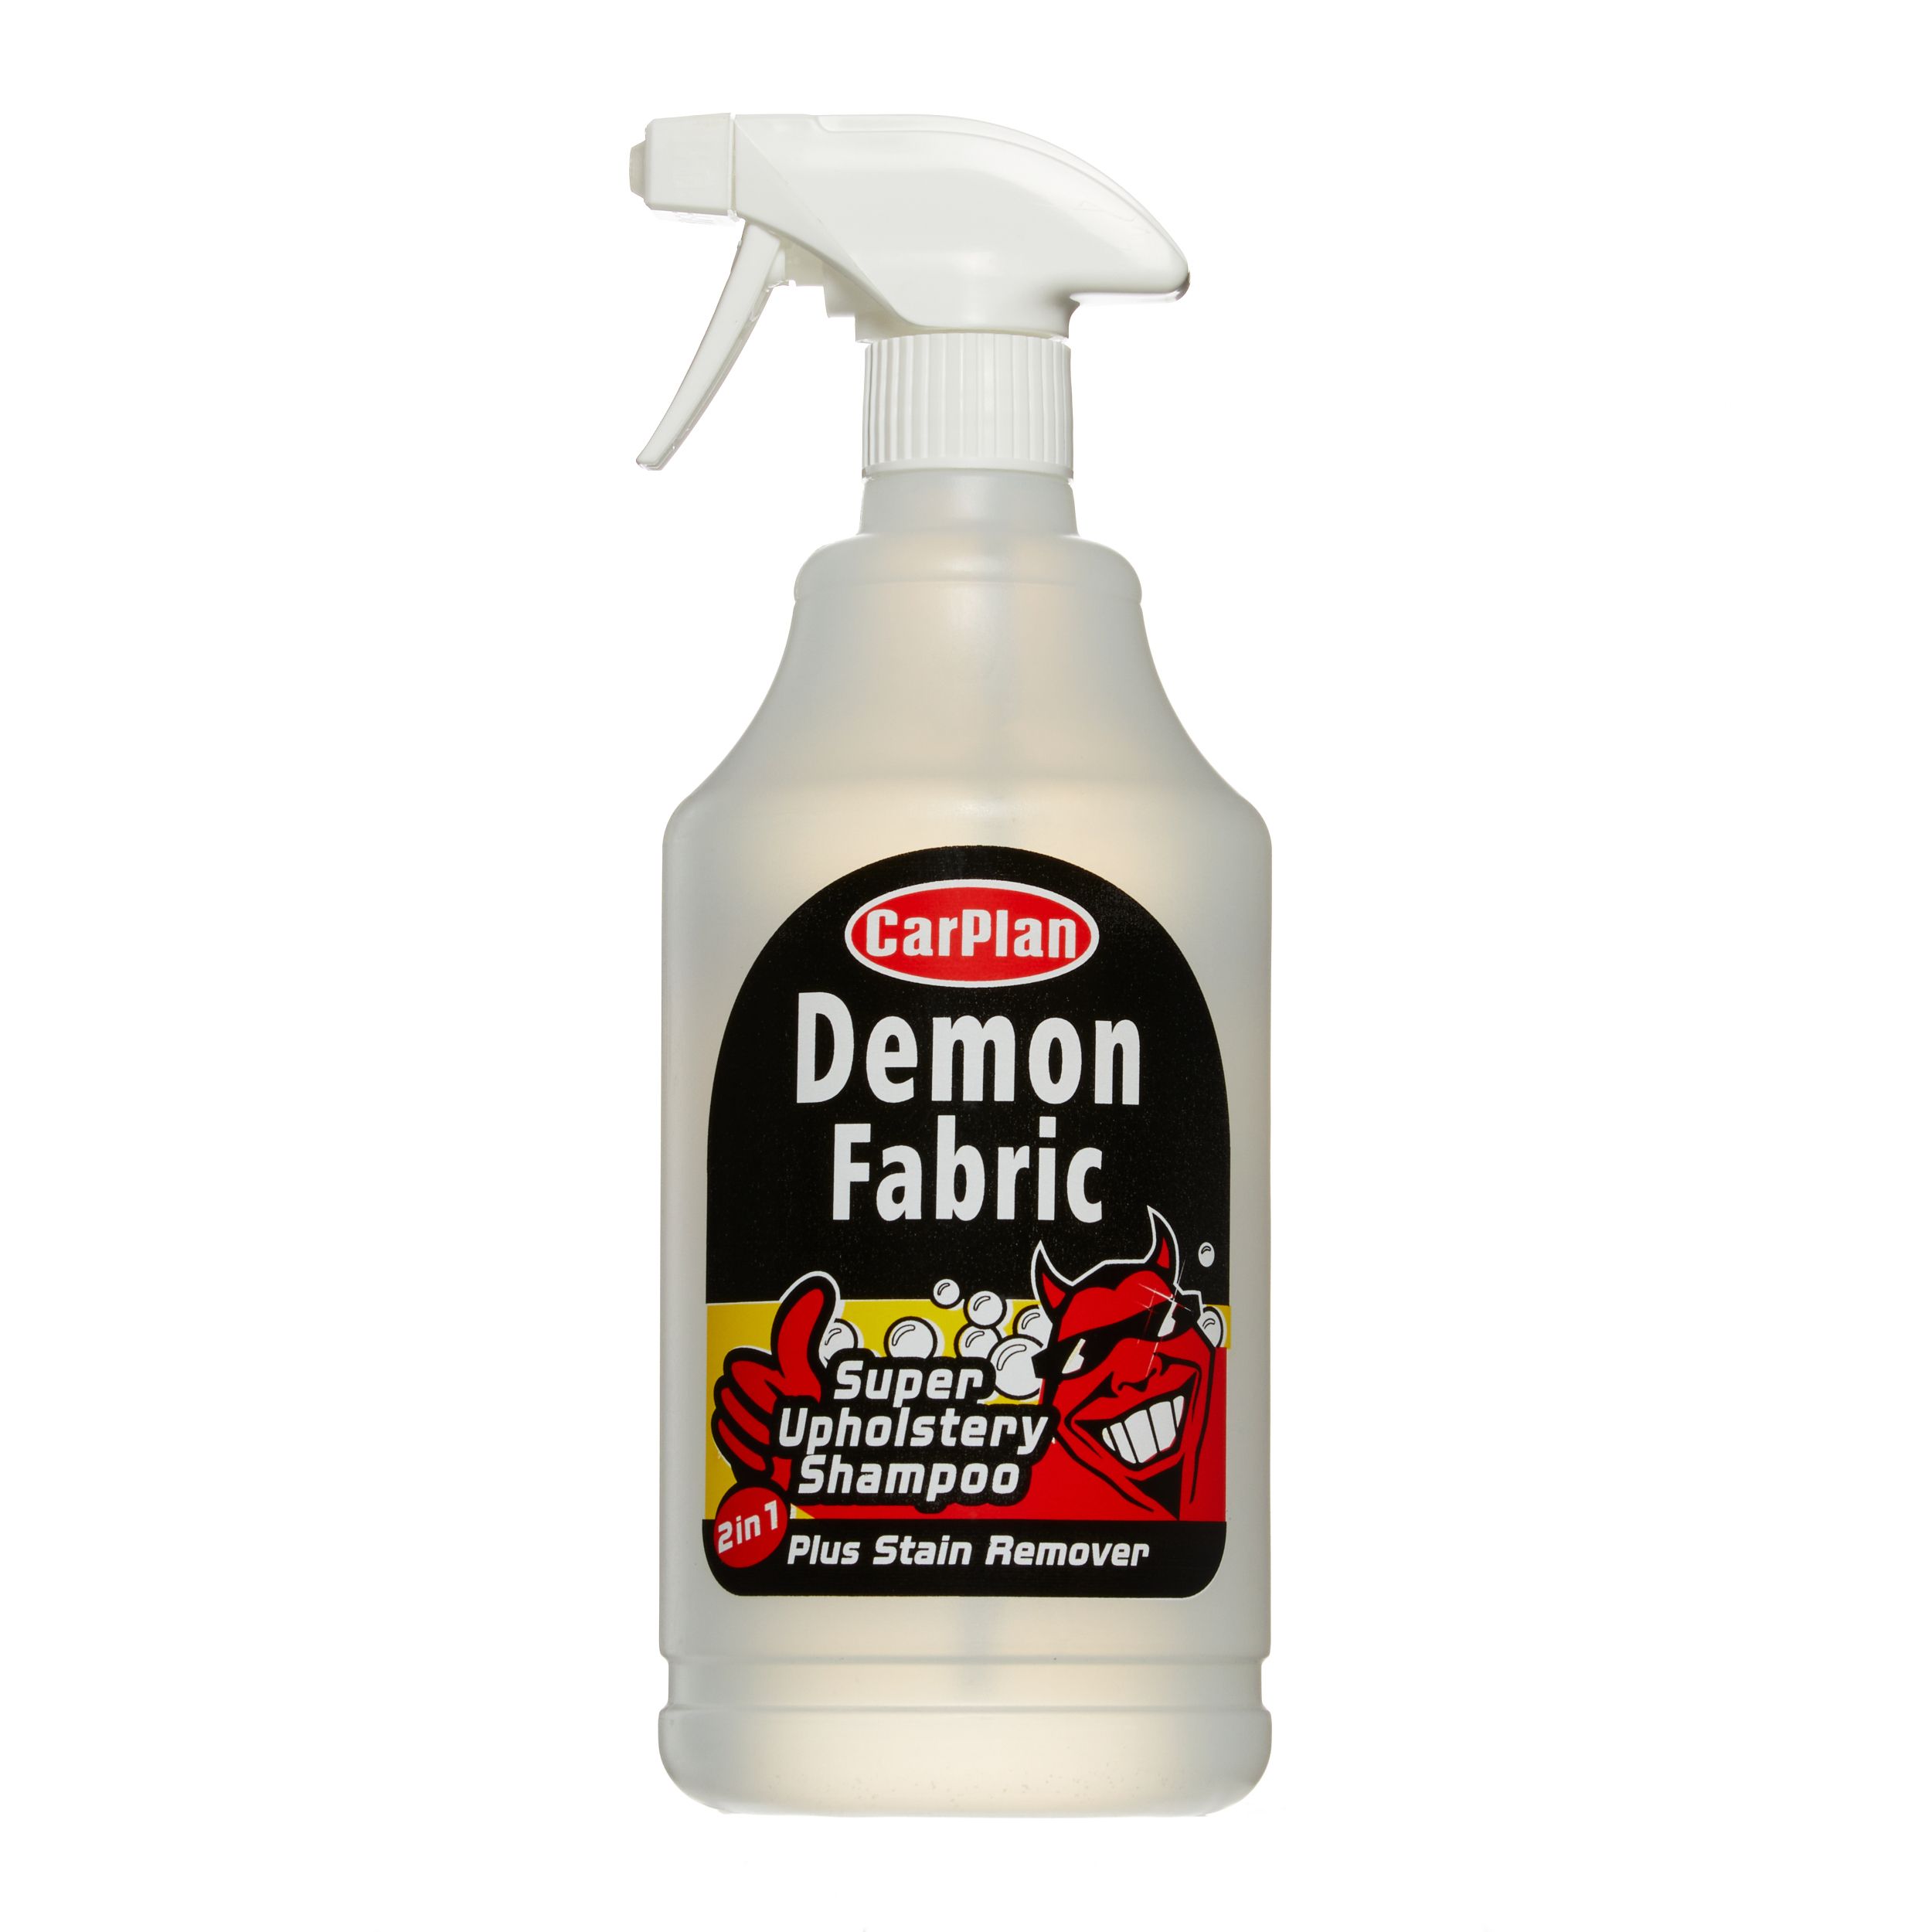 CarPlan Demon Fabric Upholstery Cleaner, 1L Bottle